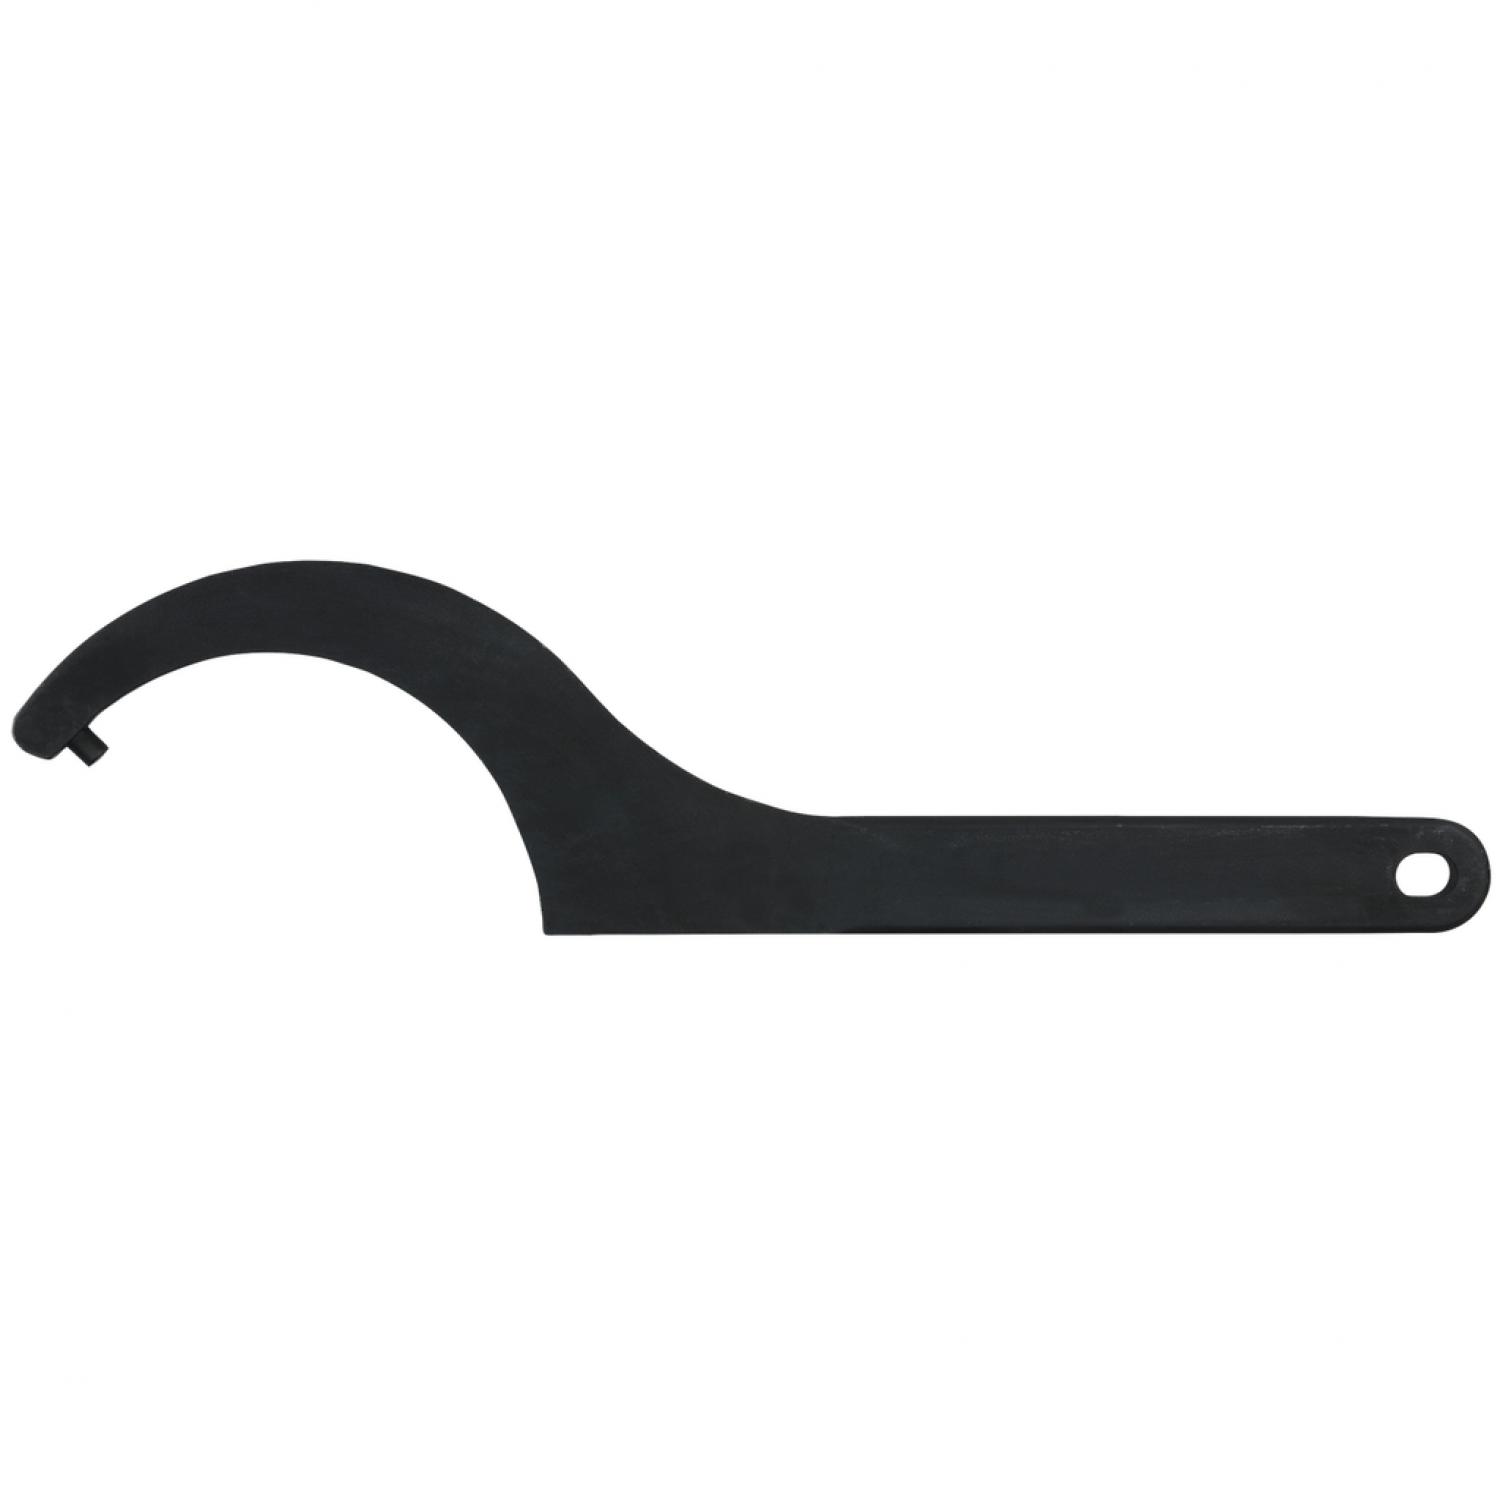 Прочный крючковый ключ с цапфами, 58-62 мм